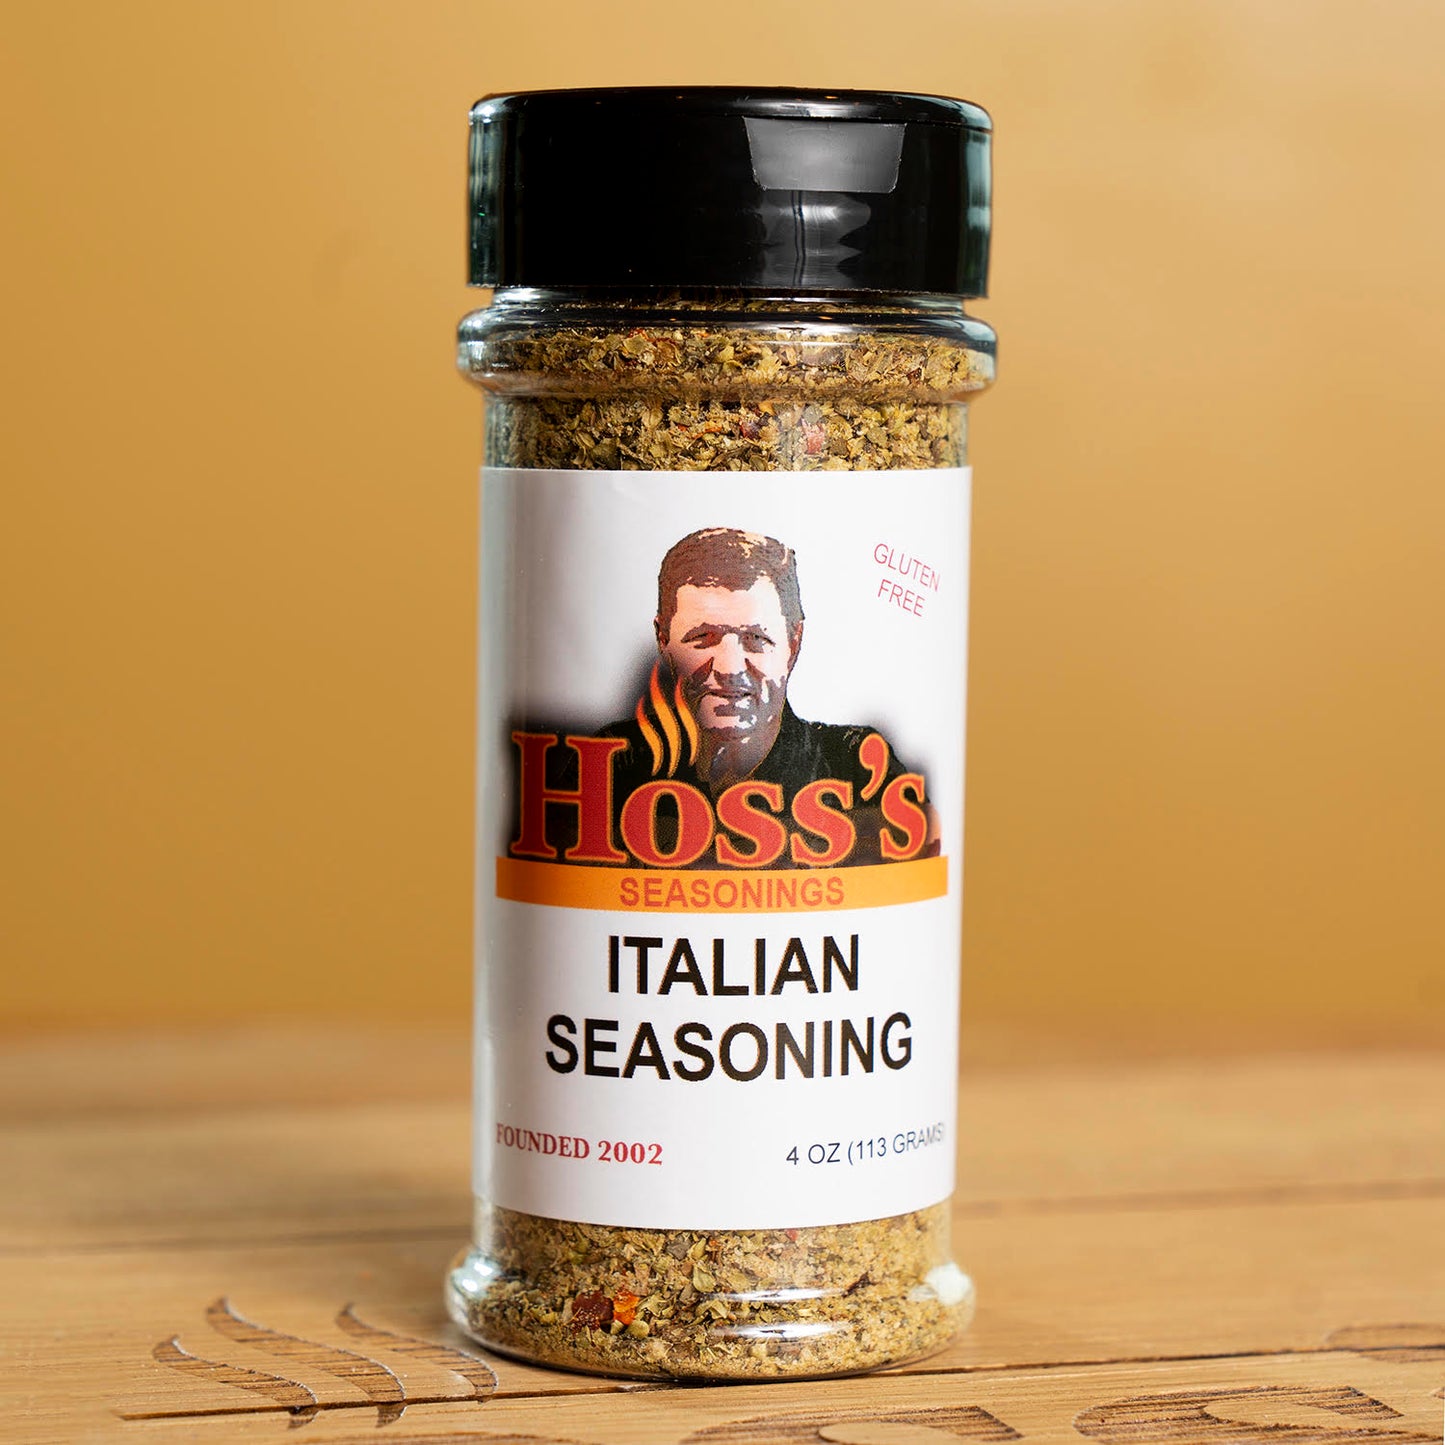 Hoss's Italian Seasoning